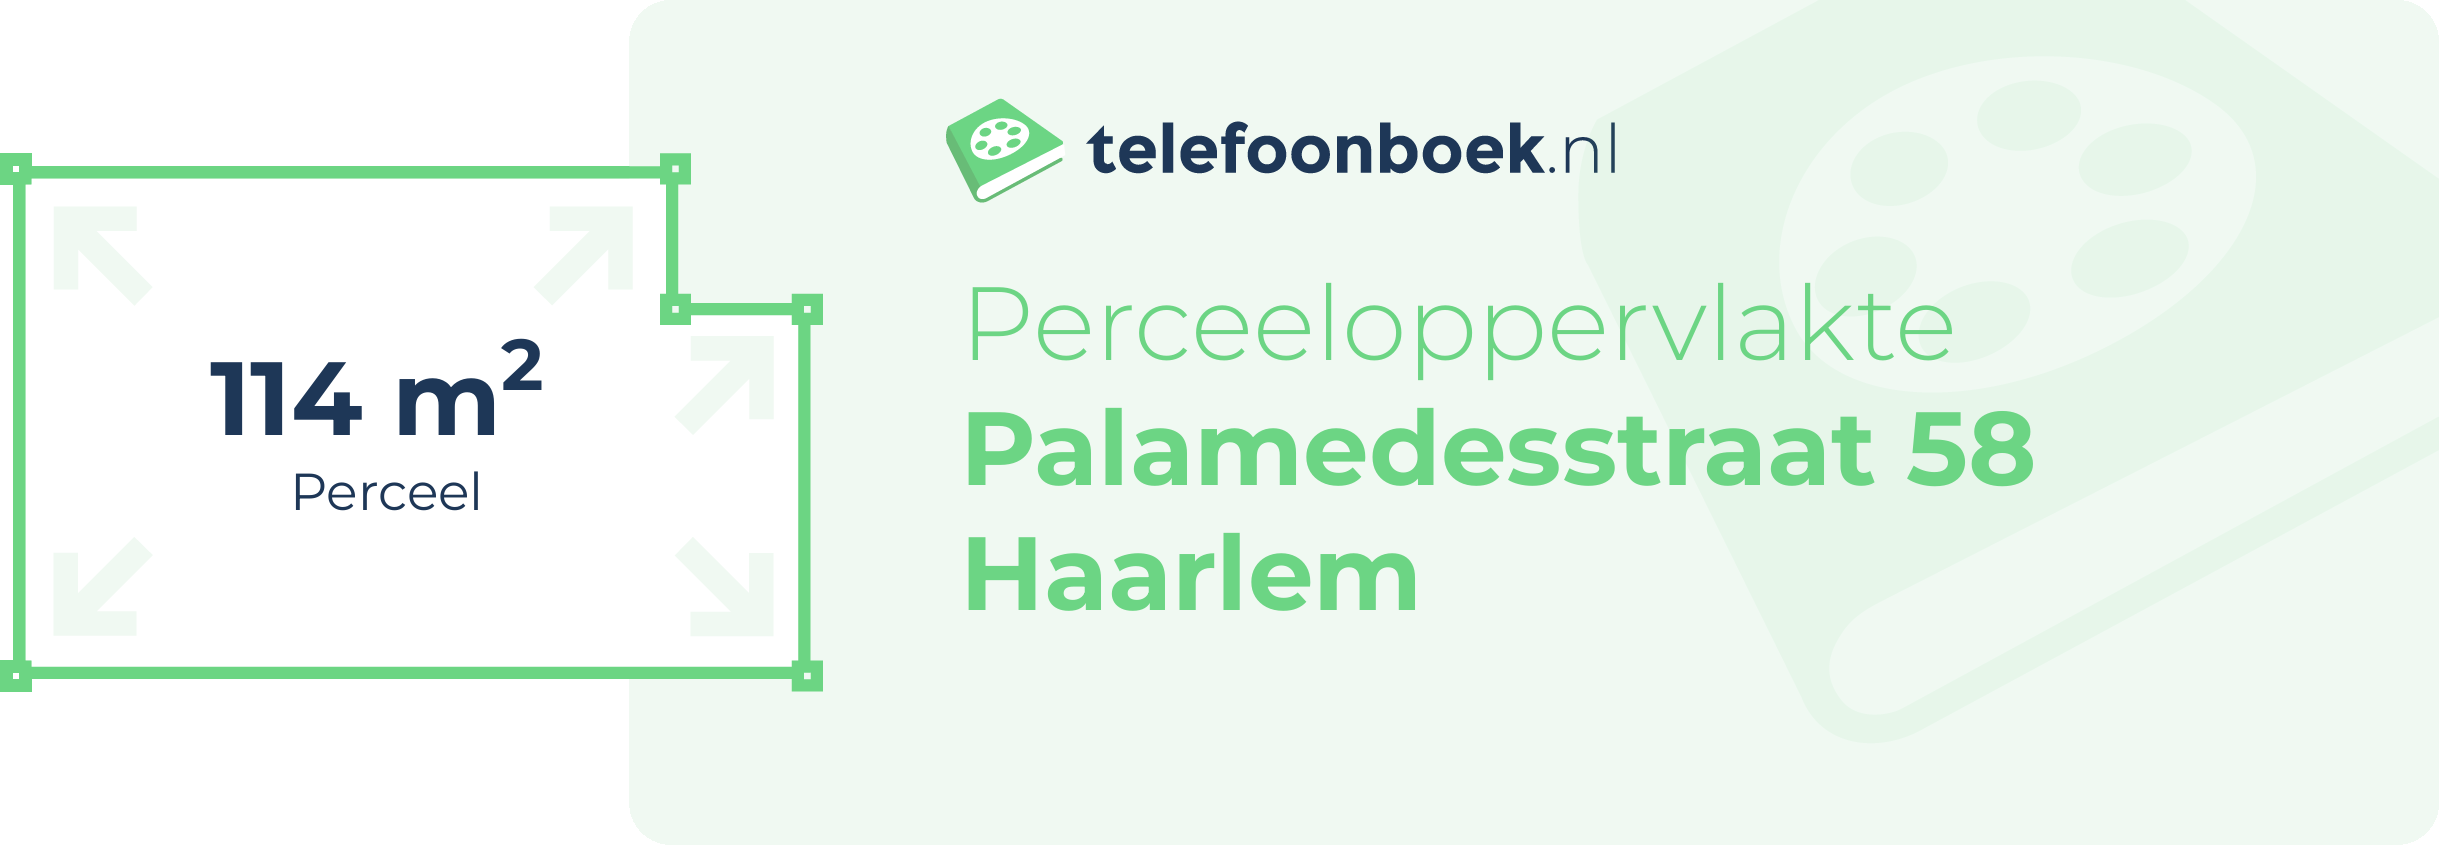 Perceeloppervlakte Palamedesstraat 58 Haarlem